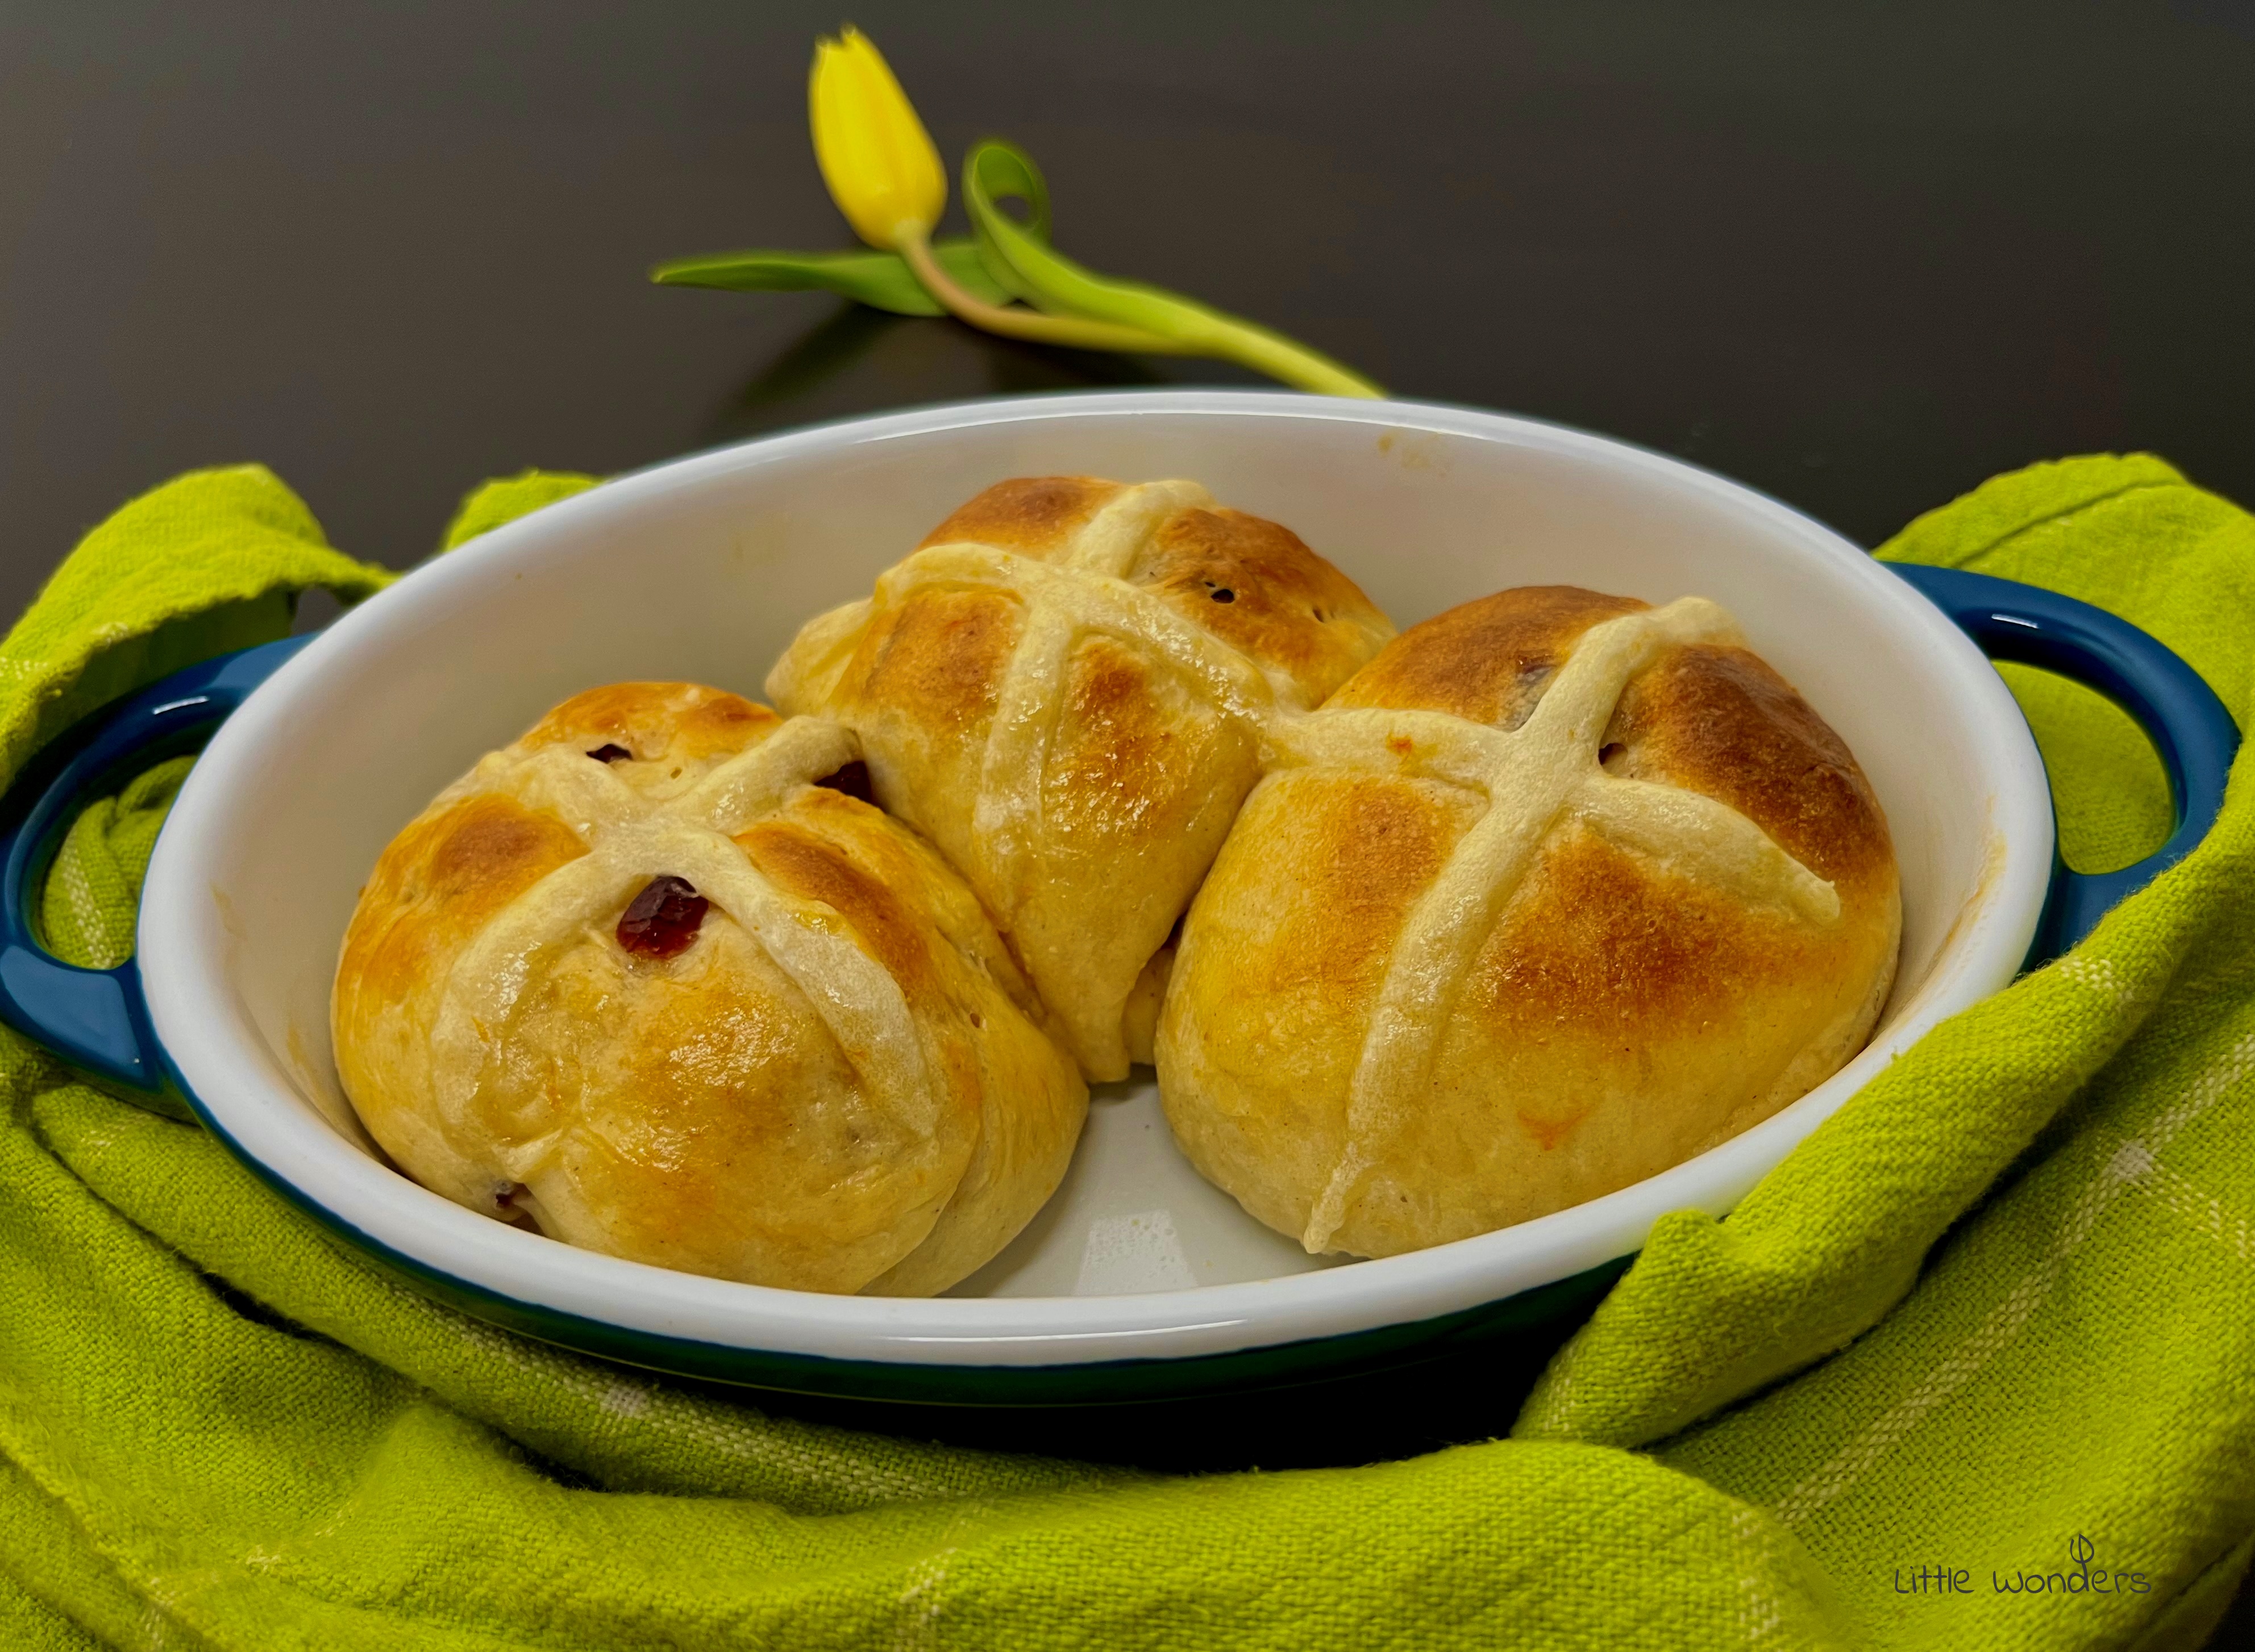 Hot Cross Buns – avagy az angol húsvéti keresztes bucik